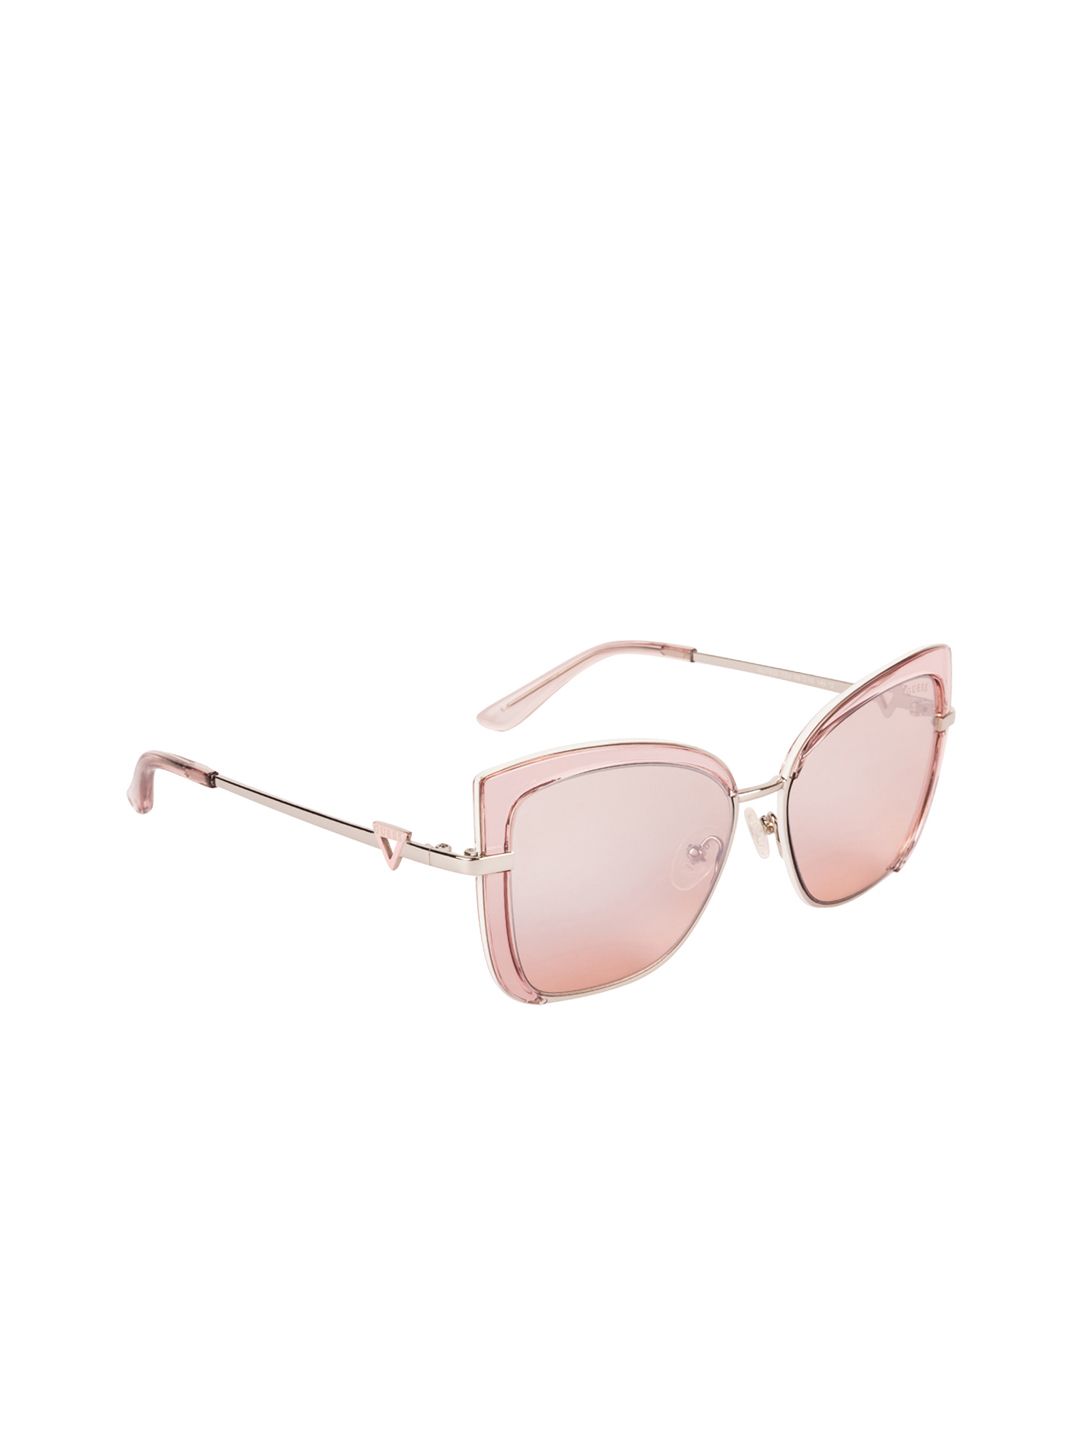 GUESS Women Square Sunglasses GU7633 56 72U Price in India